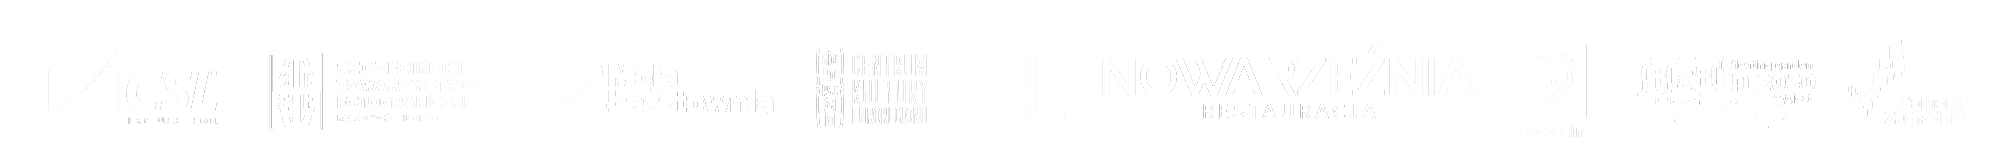 WS-Logotypy